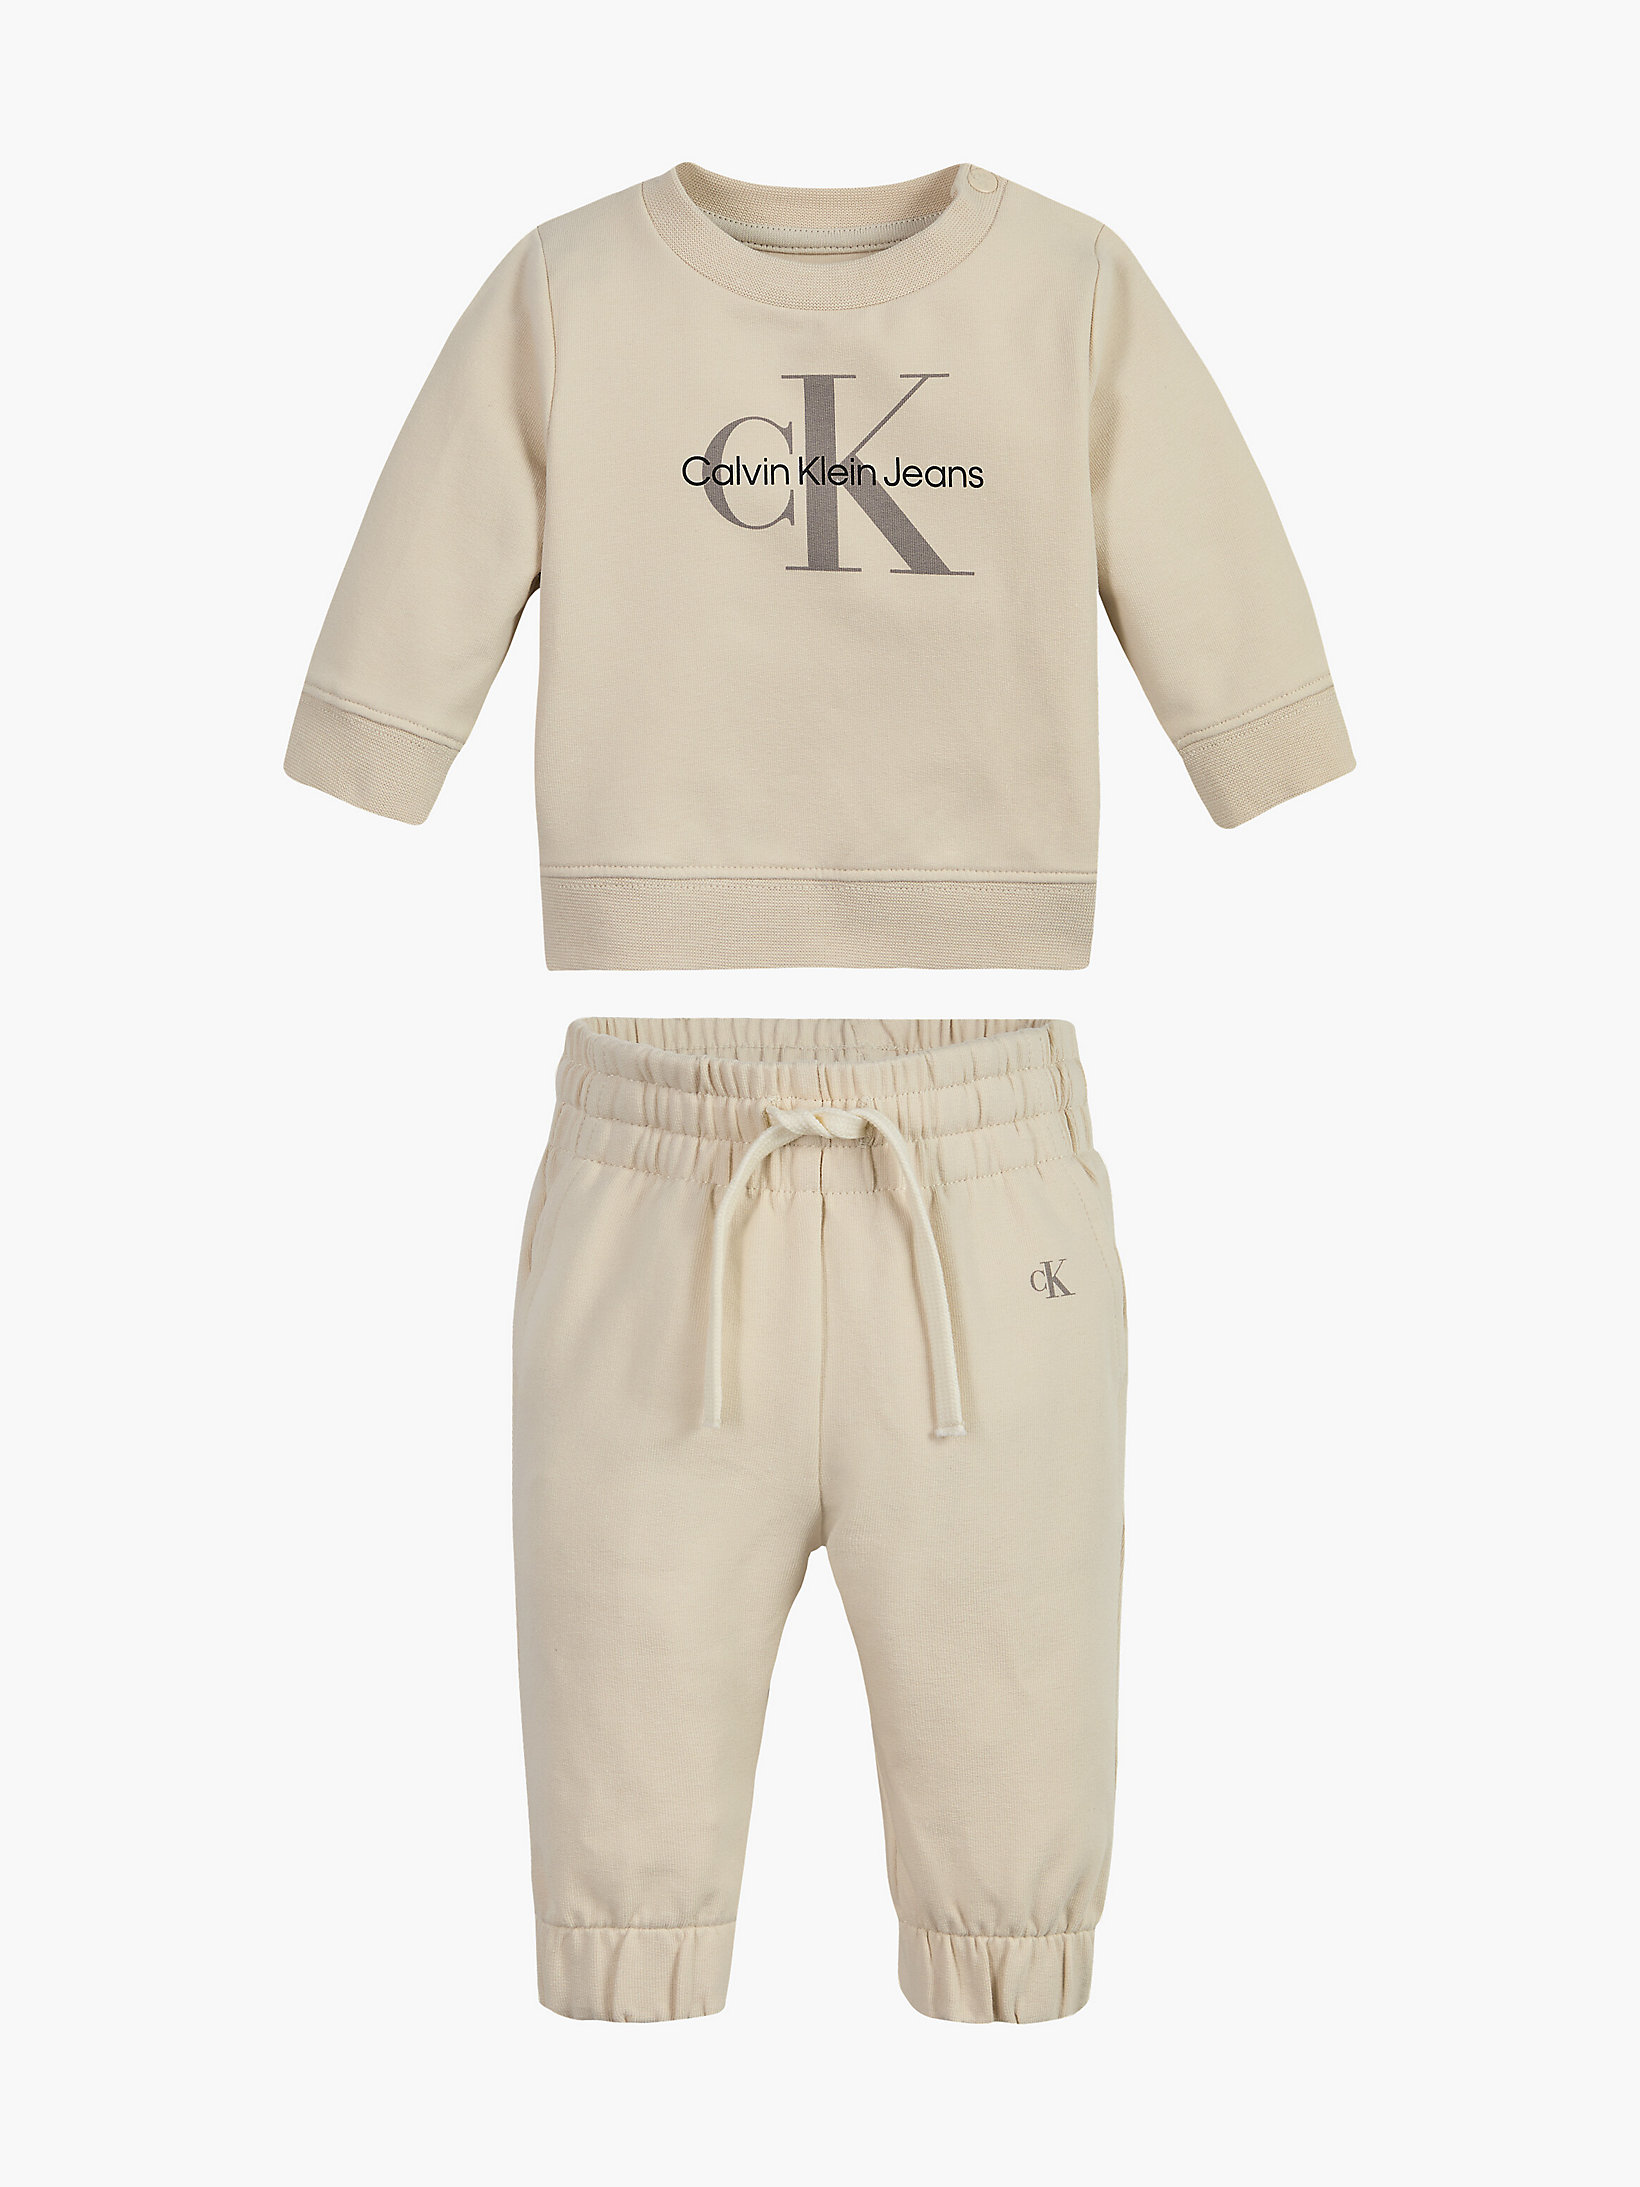 Tuta con logo per neonato Calvin Klein Neonati Abbigliamento Intimo Pagliaccetti 